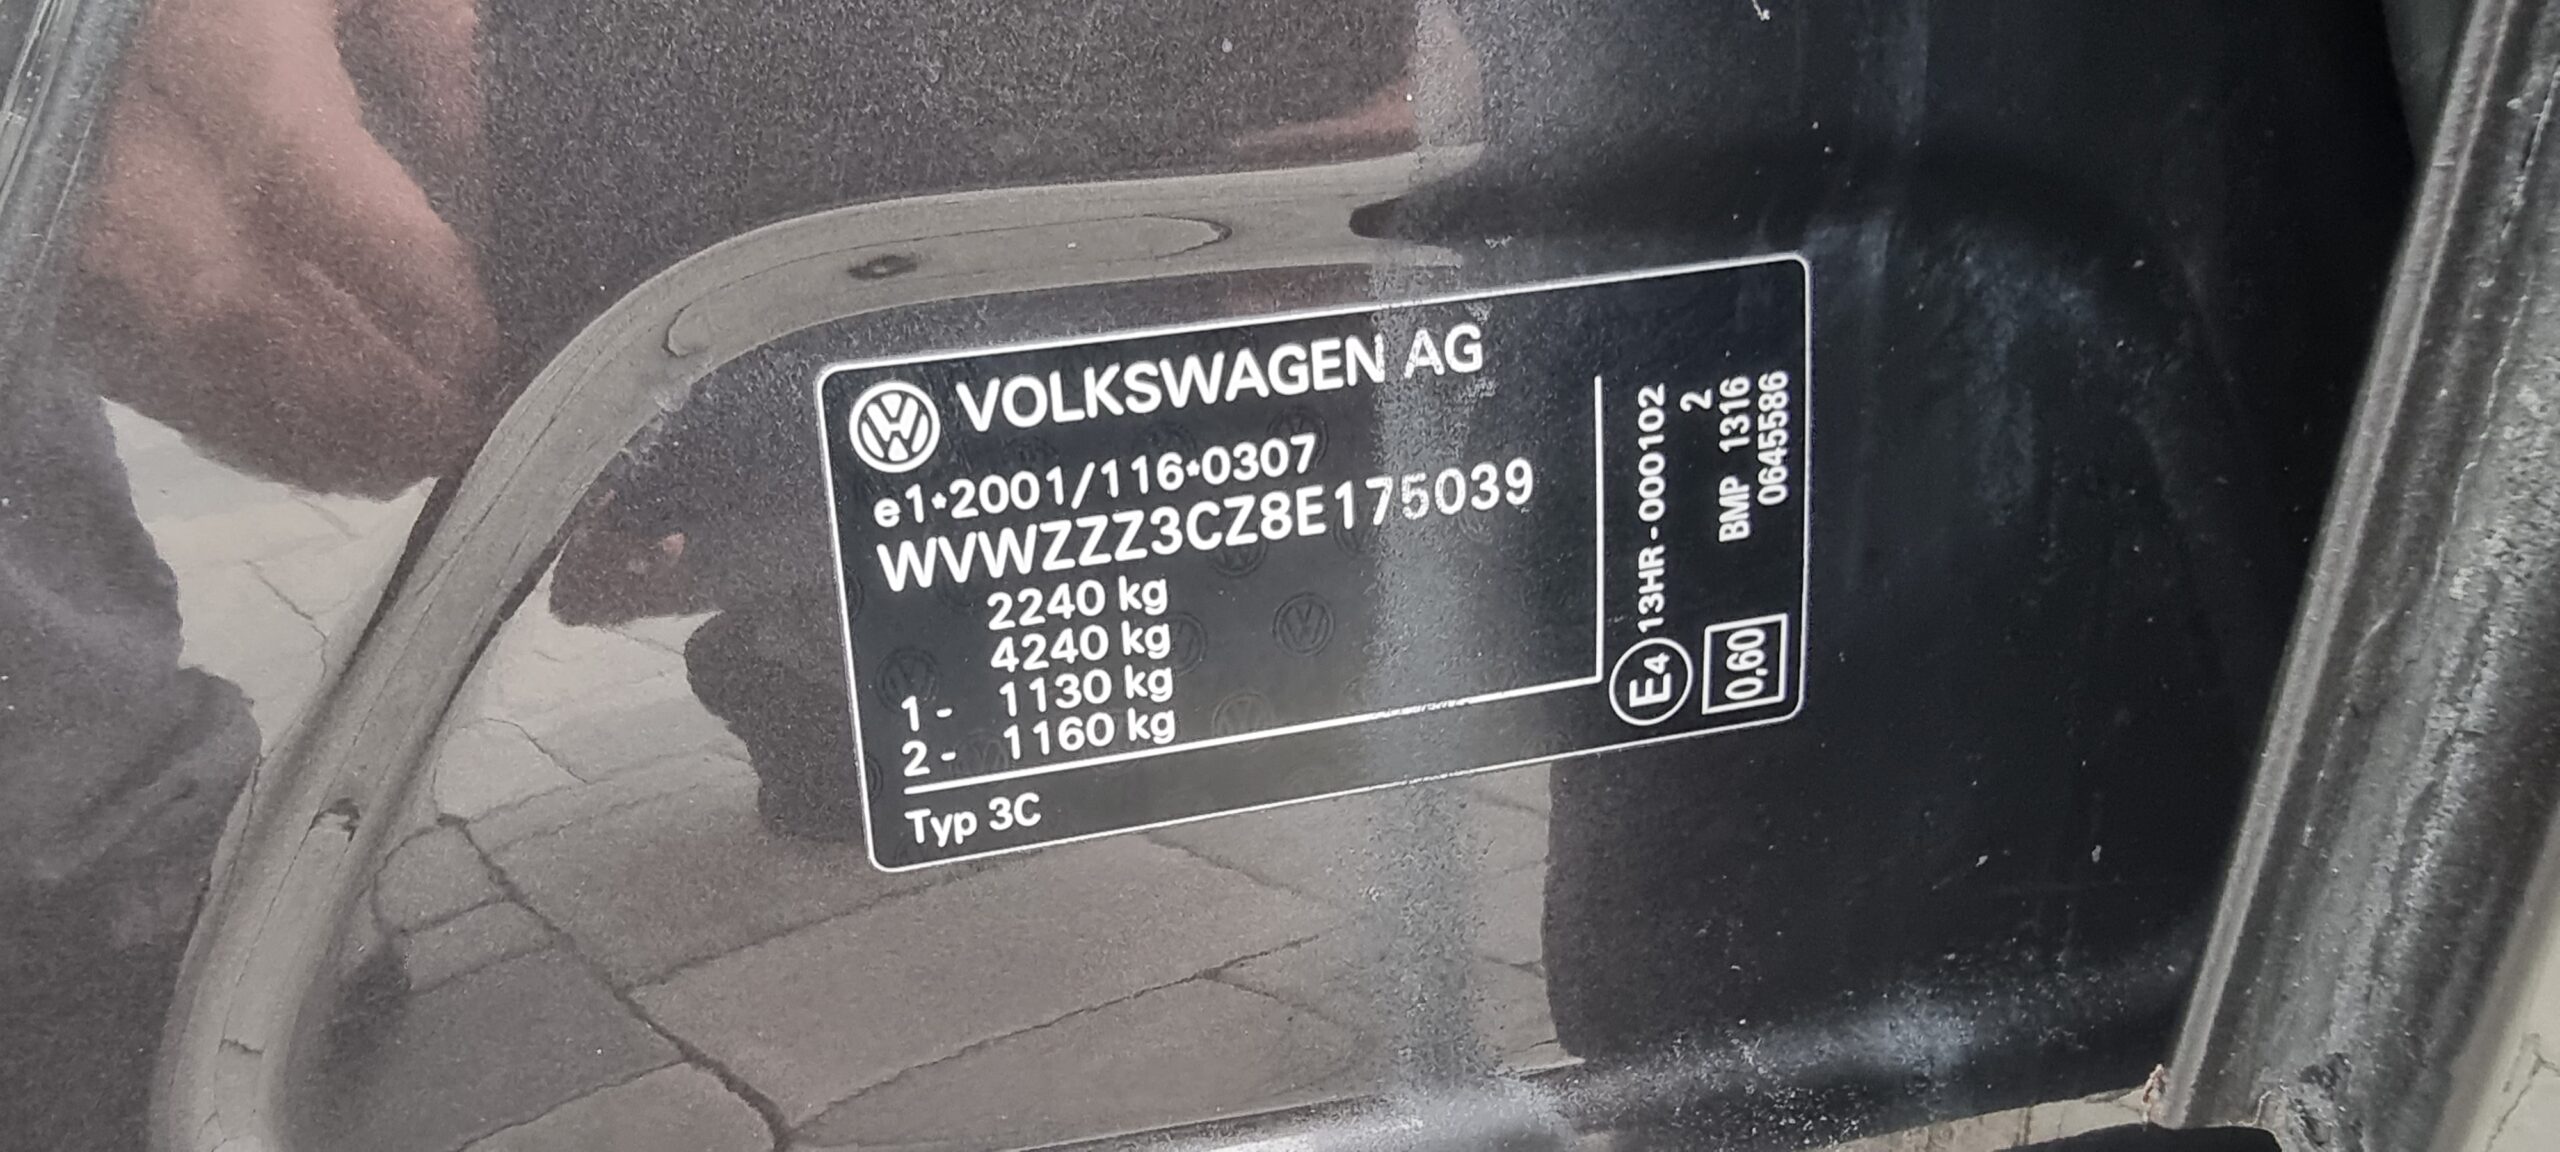 VW PASSAT HIGHLINE 4 MOTION